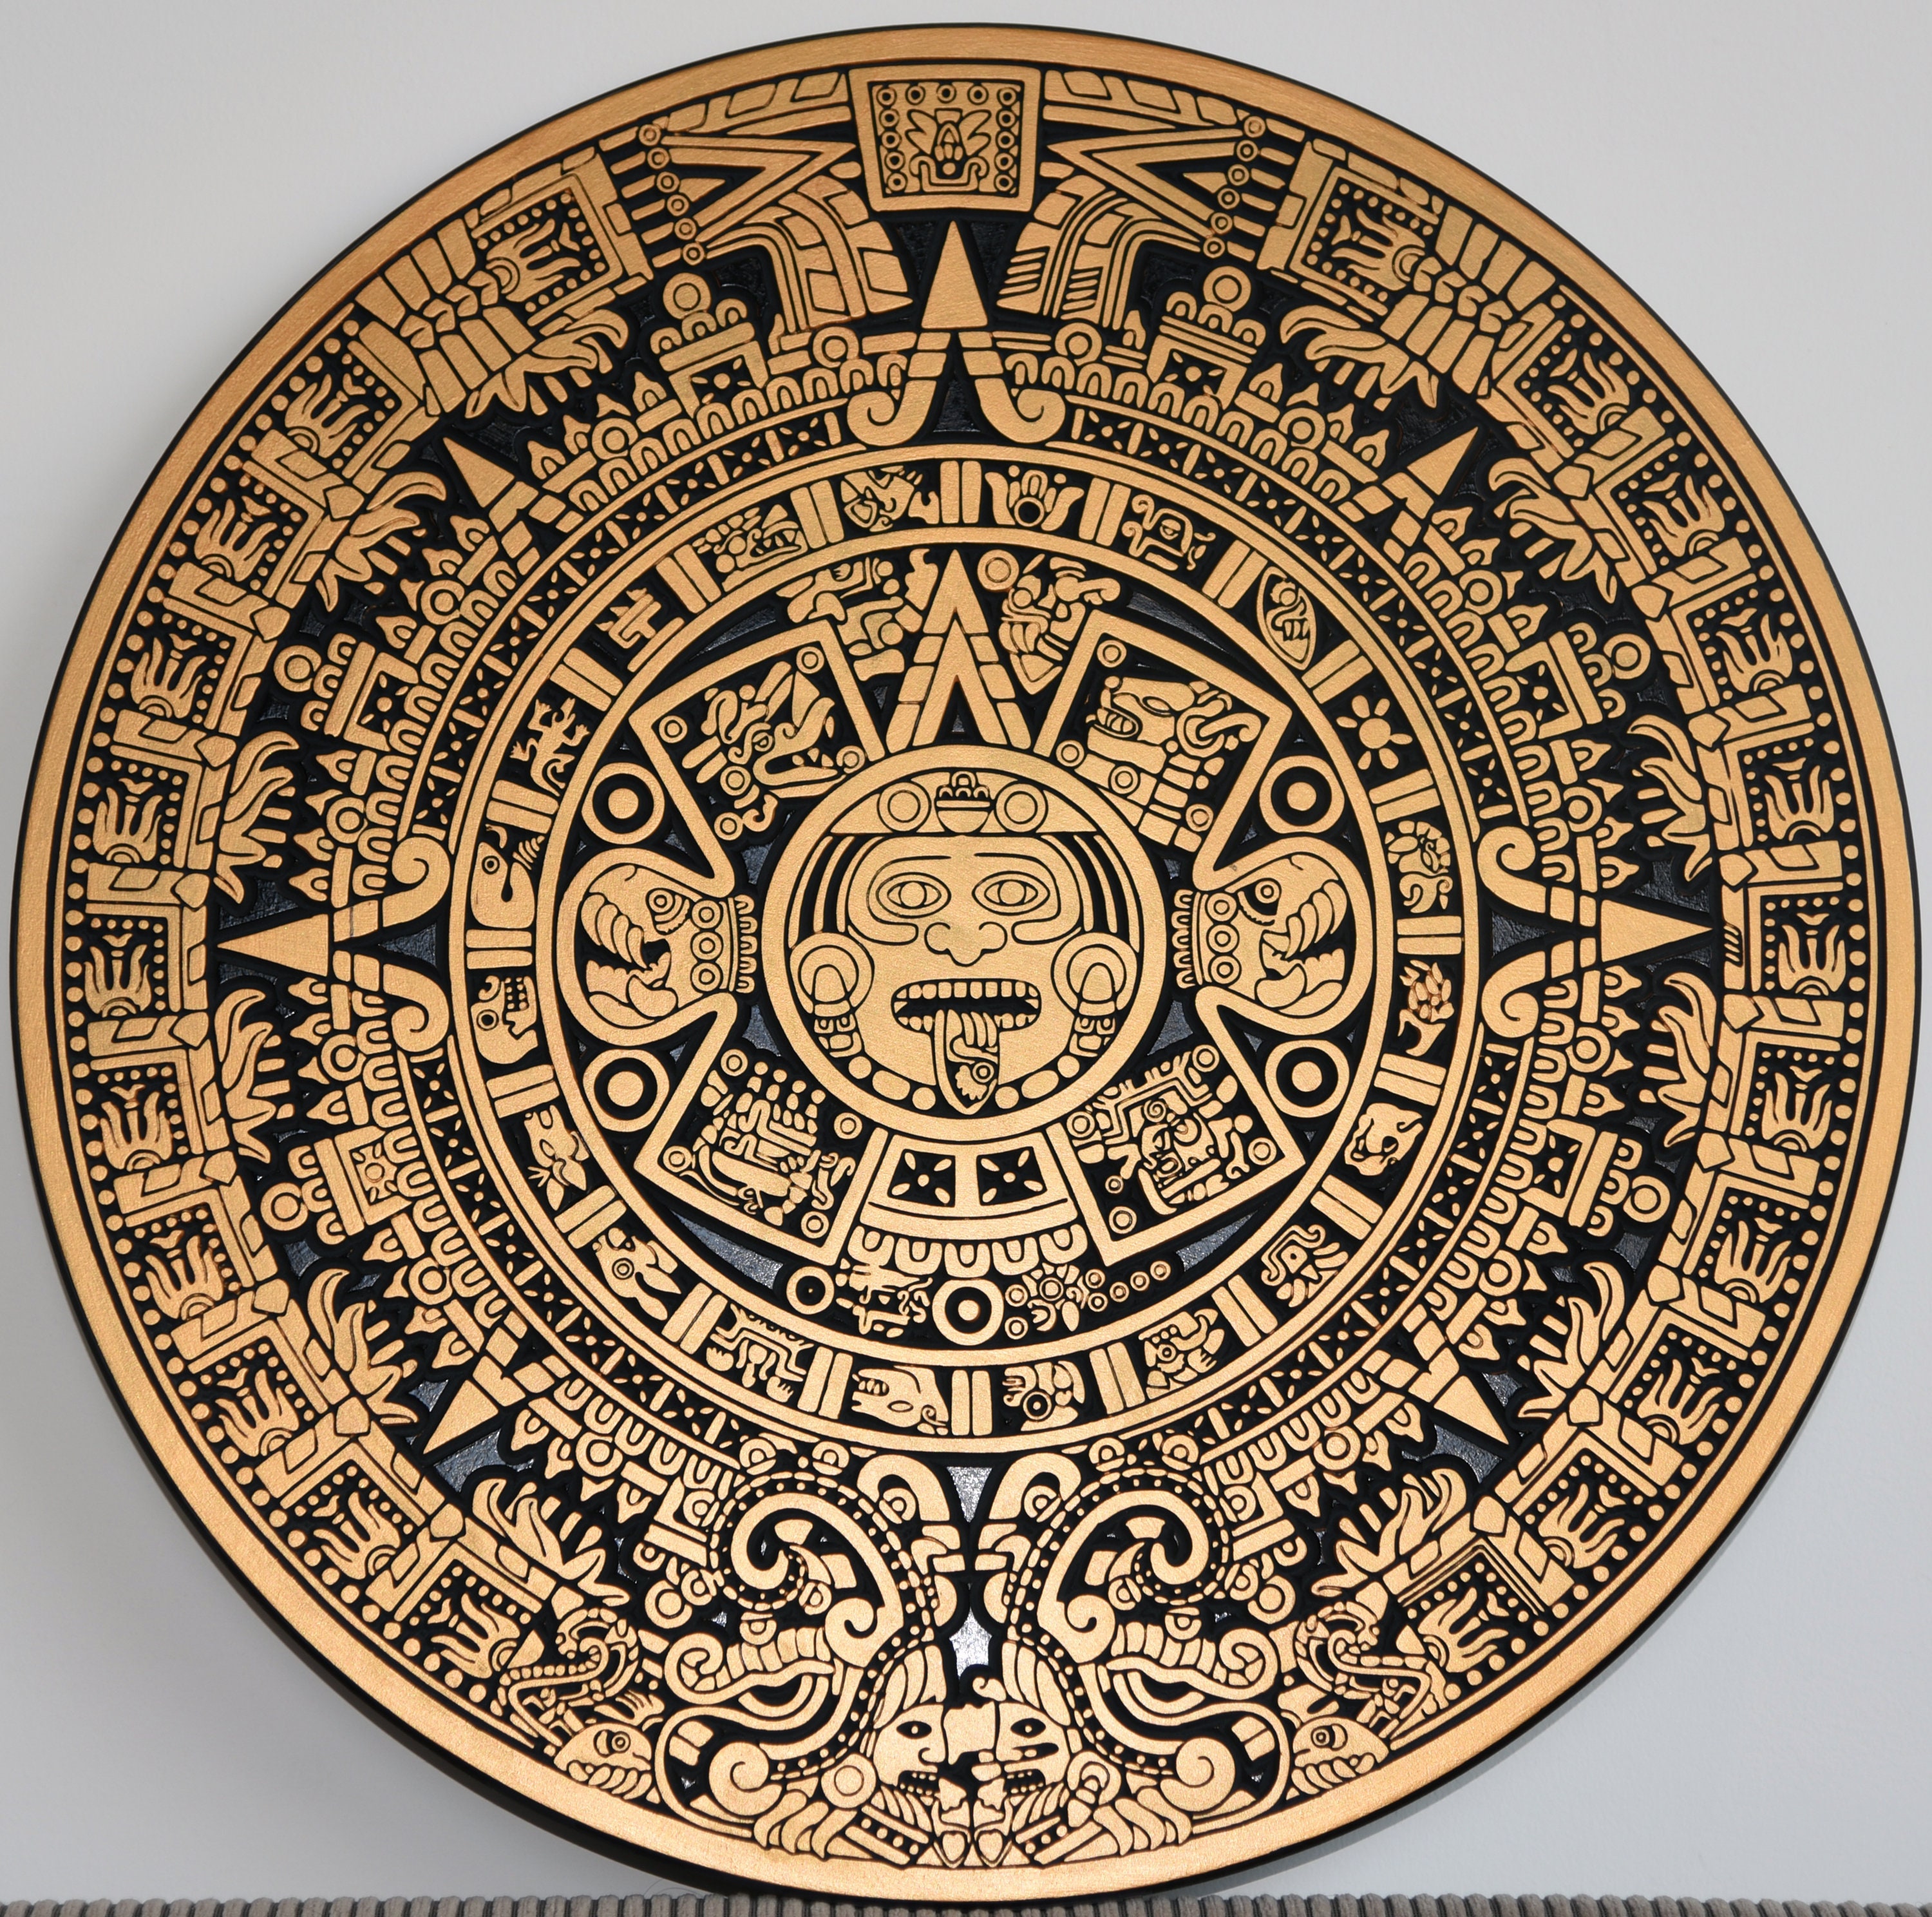 Сюжет и композиция произведения календарь майя ледермана